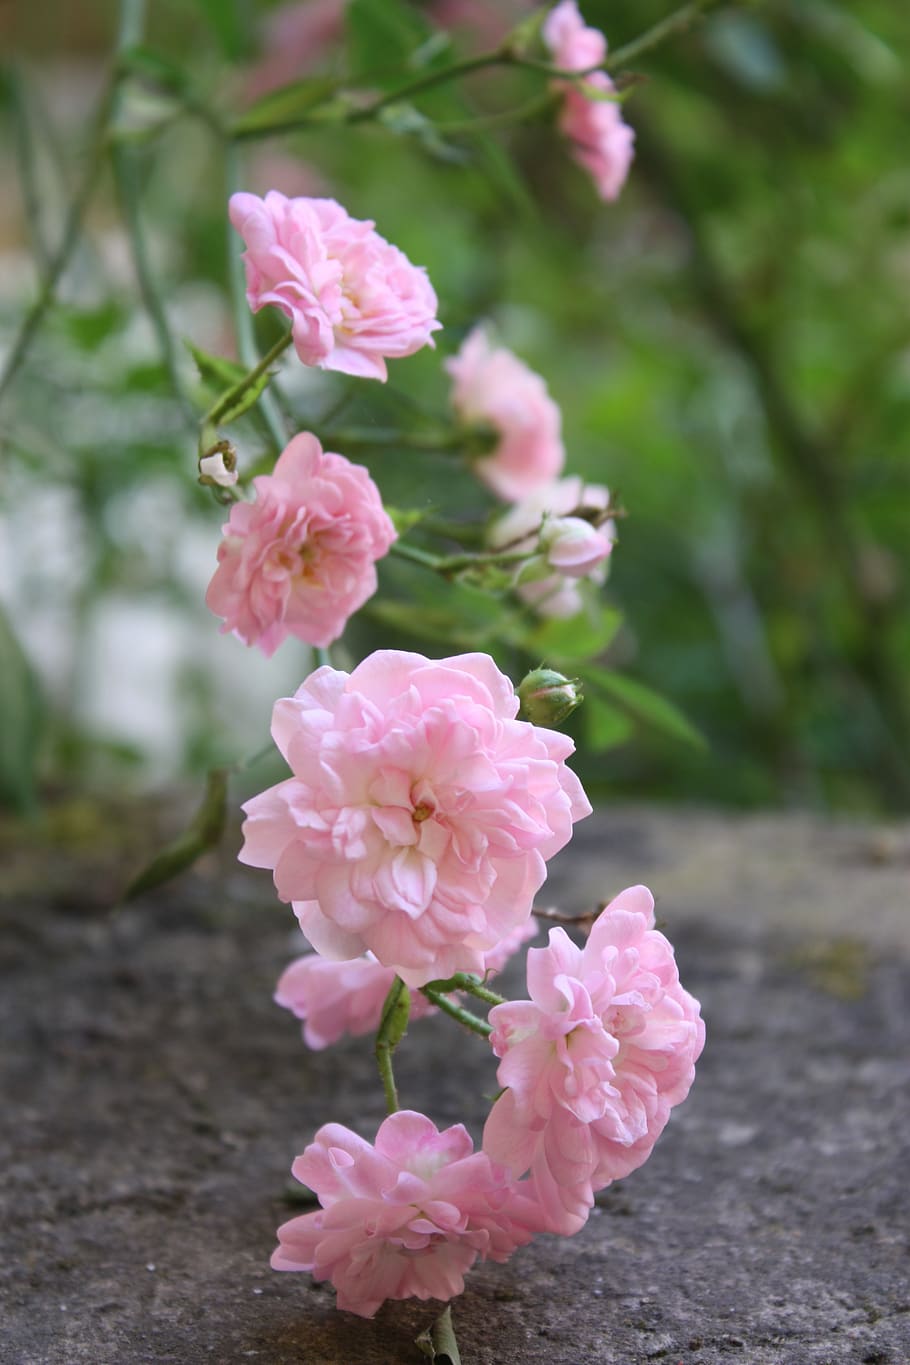 pink, rosebush, rose hips, flower, petals, nature, botany, pink color, flowering plant, plant